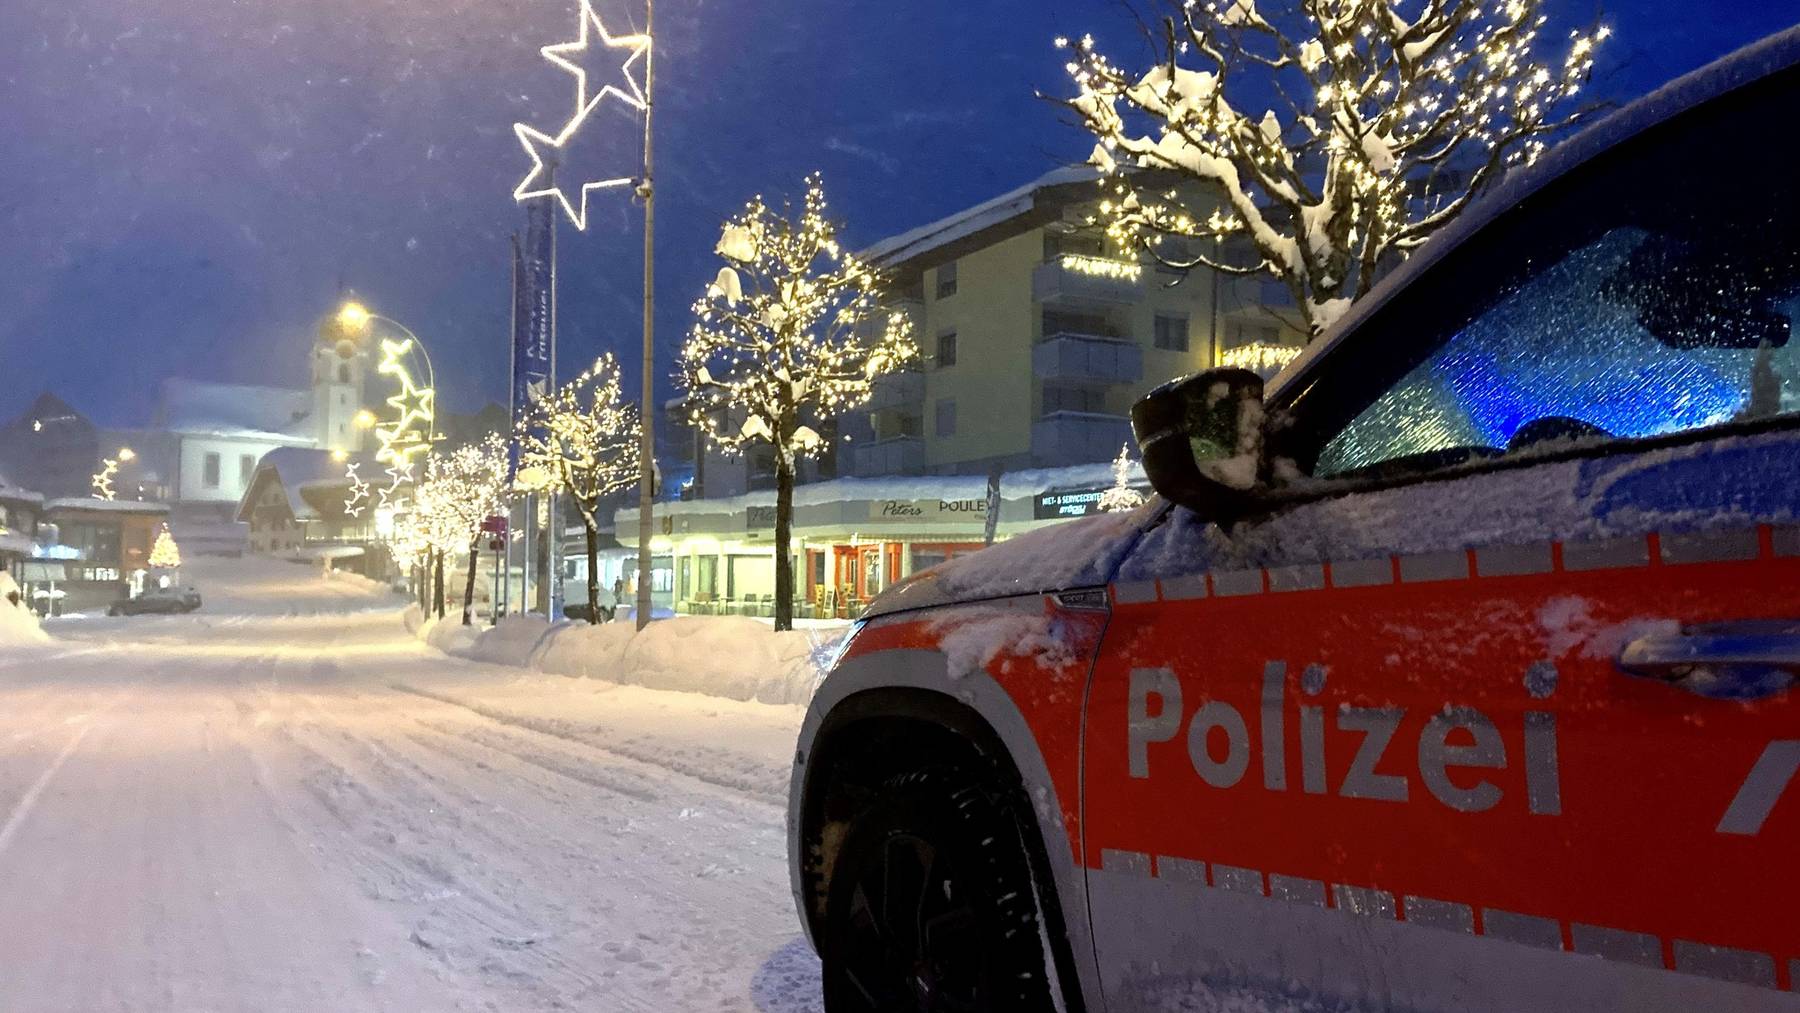 Vater und Sohn befanden sich um 16.45 Uhr im Snowlipark bei der Talstation Schönisei in Sörenberg, wo das Unglück seinen Anfang nahm